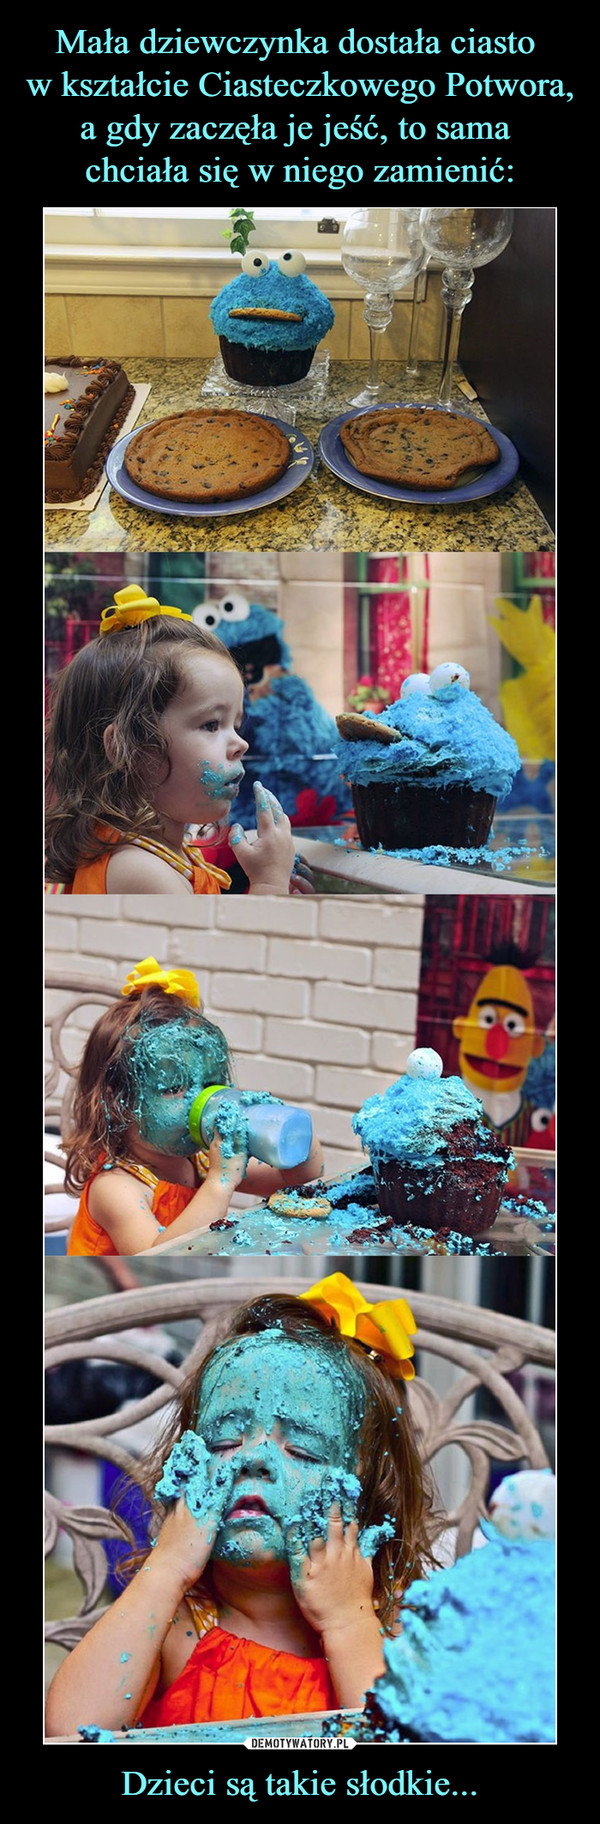 Mała dziewczynka dostała ciasto 
w kształcie Ciasteczkowego Potwora, a gdy zaczęła je jeść, to sama 
chciała się w niego zamienić: Dzieci są takie słodkie...